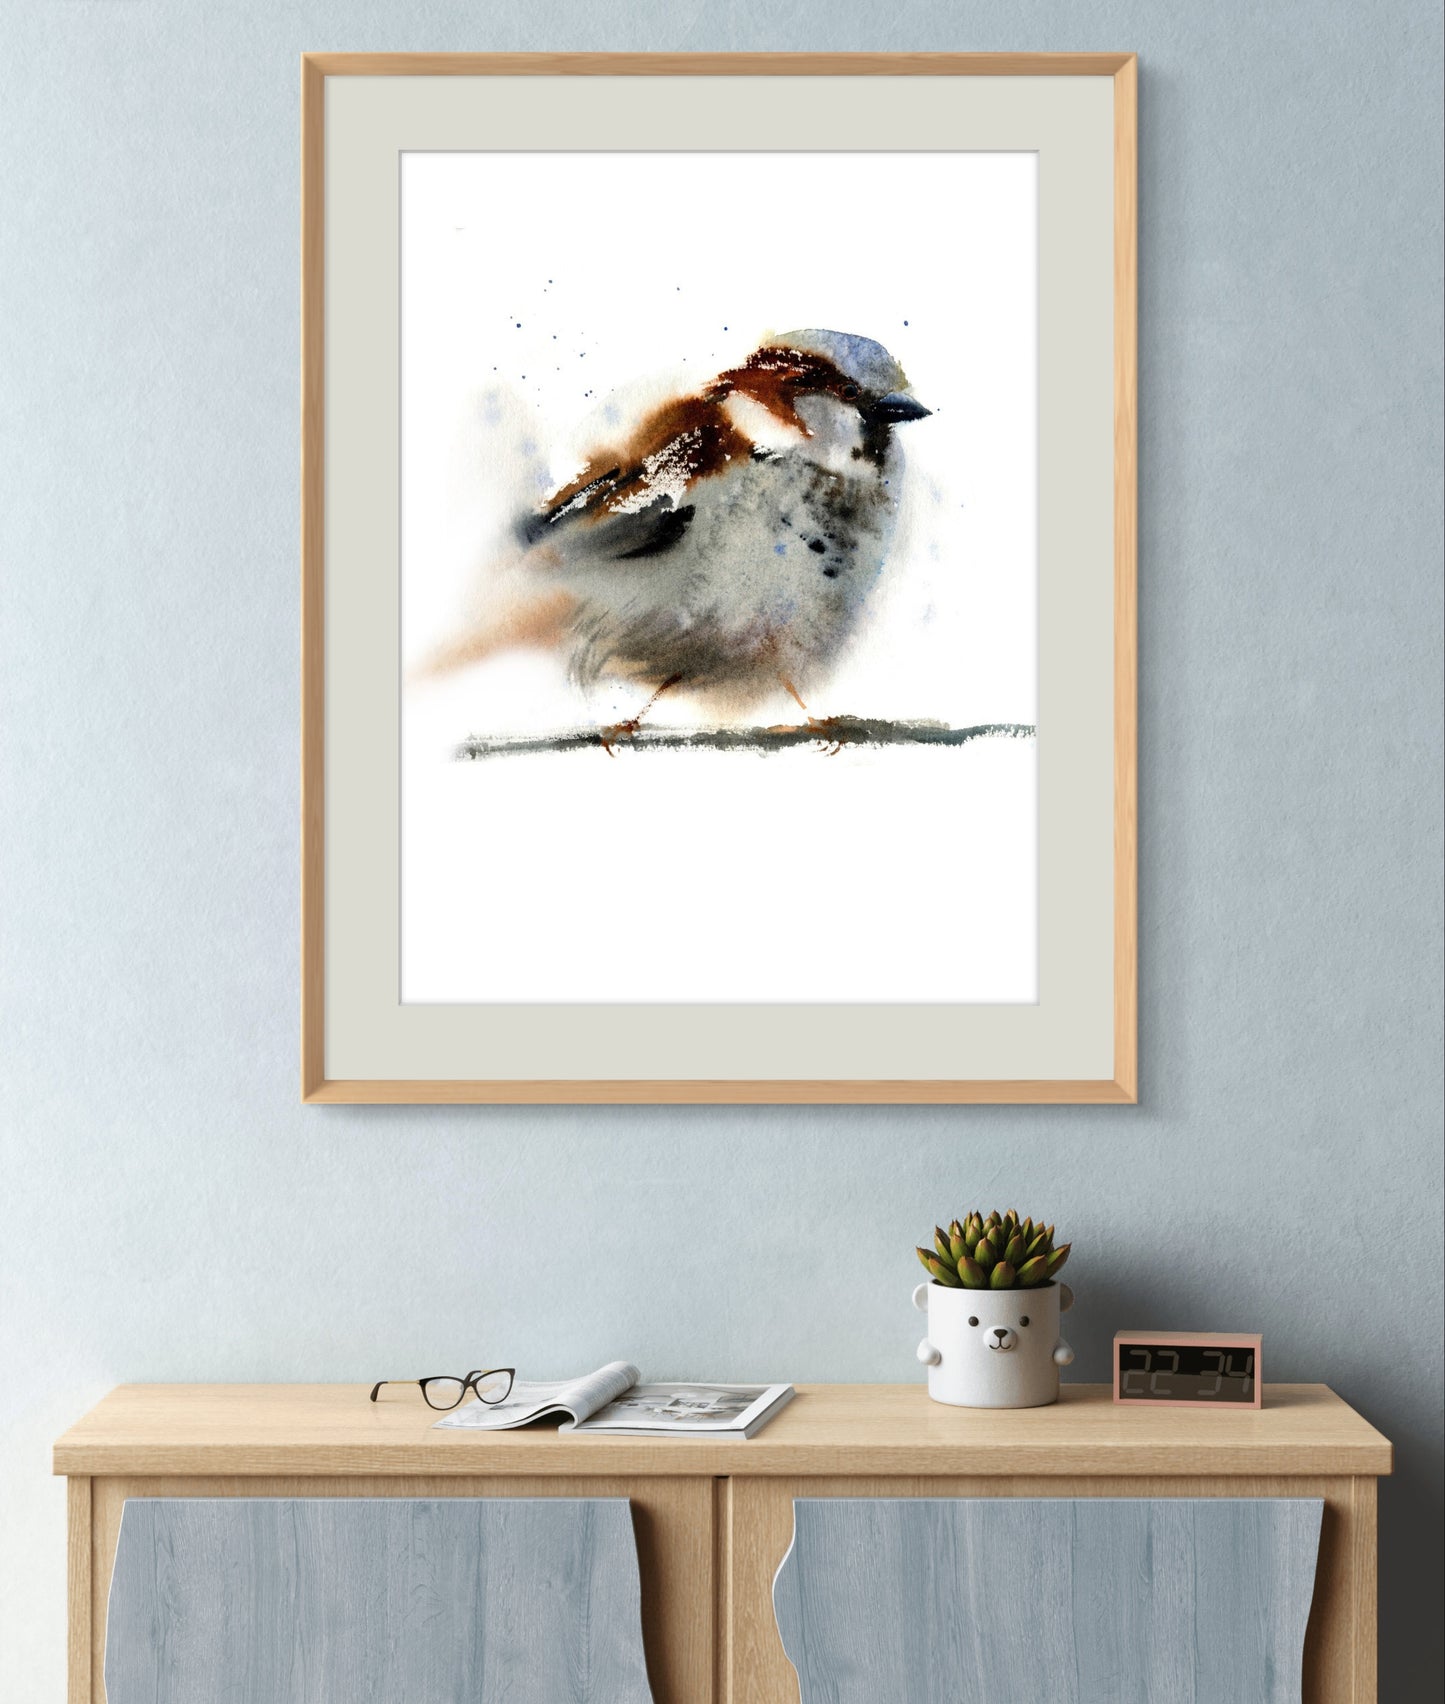 Sparrow Painting Bird Watercolor Art Print Little Songbird Wall Art Animals Poster Gift